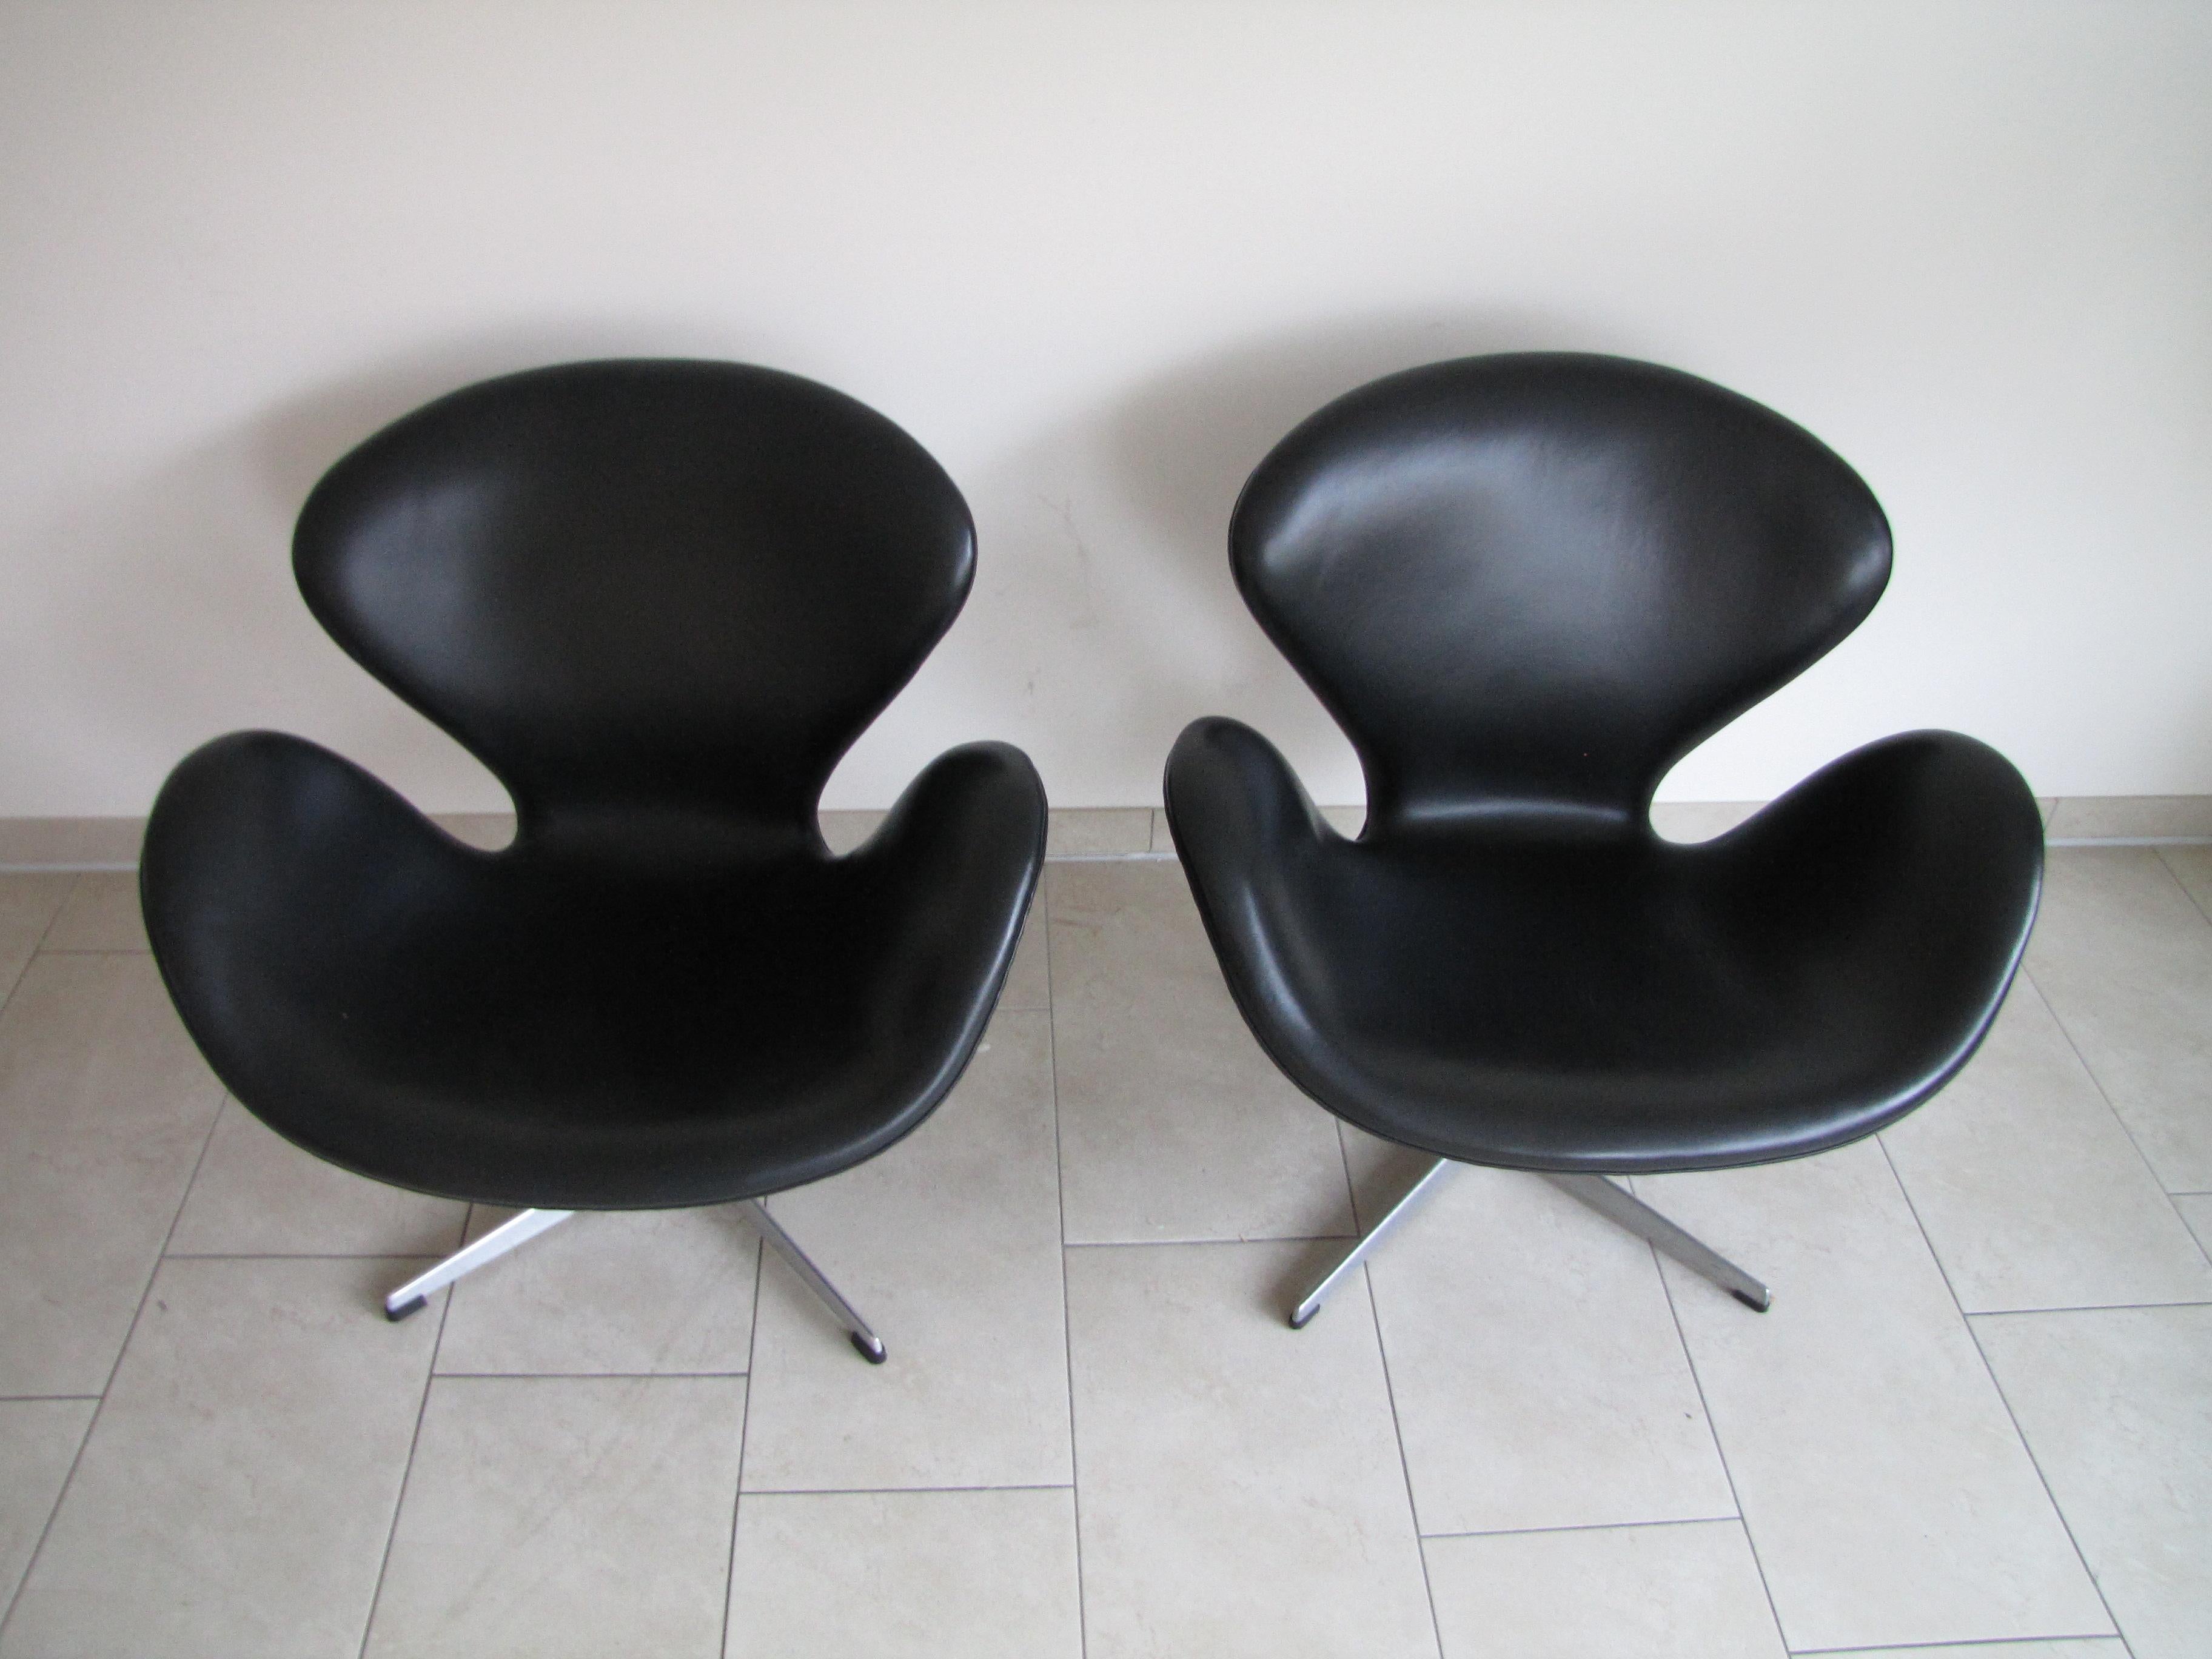 Ein Satz von zwei Schwan-Stühlen, entworfen von Arne Jacobsen für Fritz Hansen im Jahr 1958.
gepolstert mit schwarzem Leder
frühe Produktion aus den 1960er Jahren